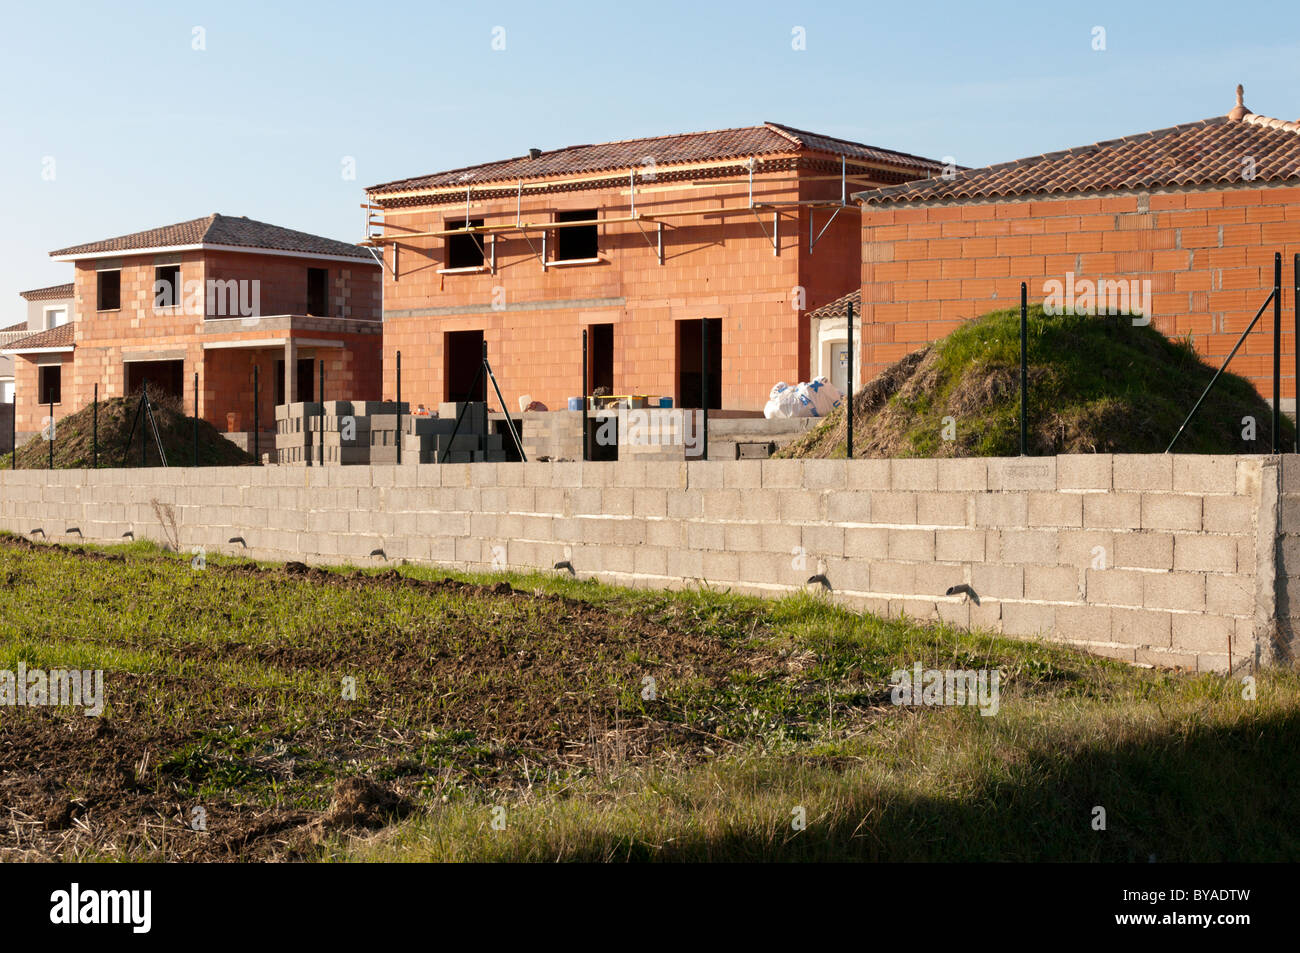 Eine neue Wohnsiedlung gebaut am Rande eines französischen Dorfes im Languedoc-Roussillon. Stockfoto